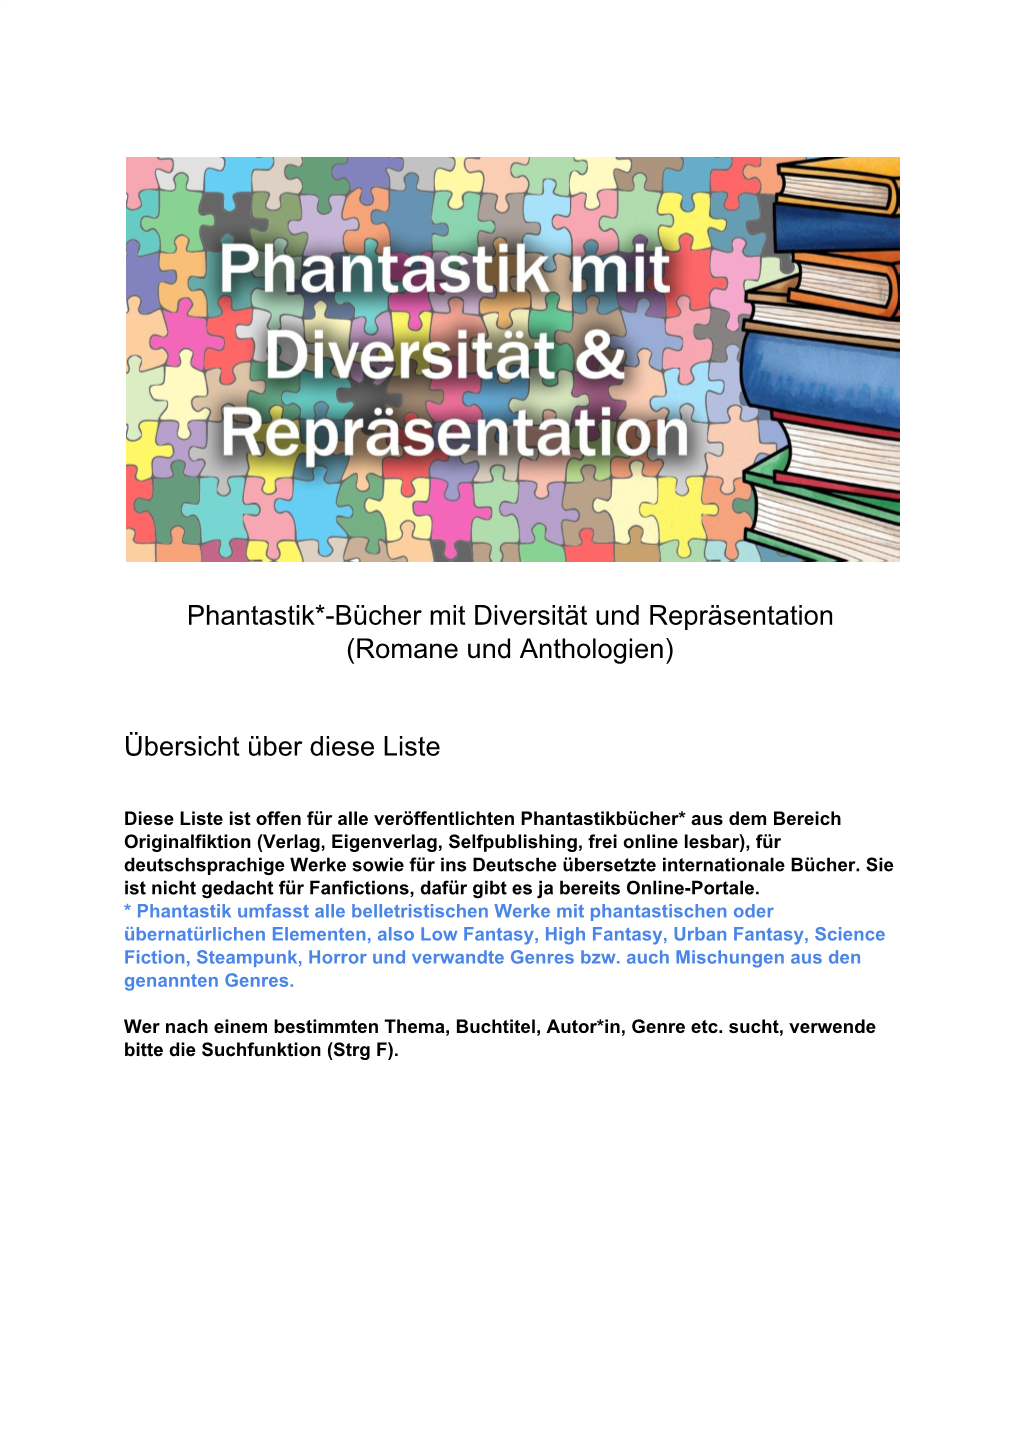 Phantastik*-Bücher Mit Diversität Und Repräsentation (Romane Und Anthologien) Übersicht Über Diese Liste